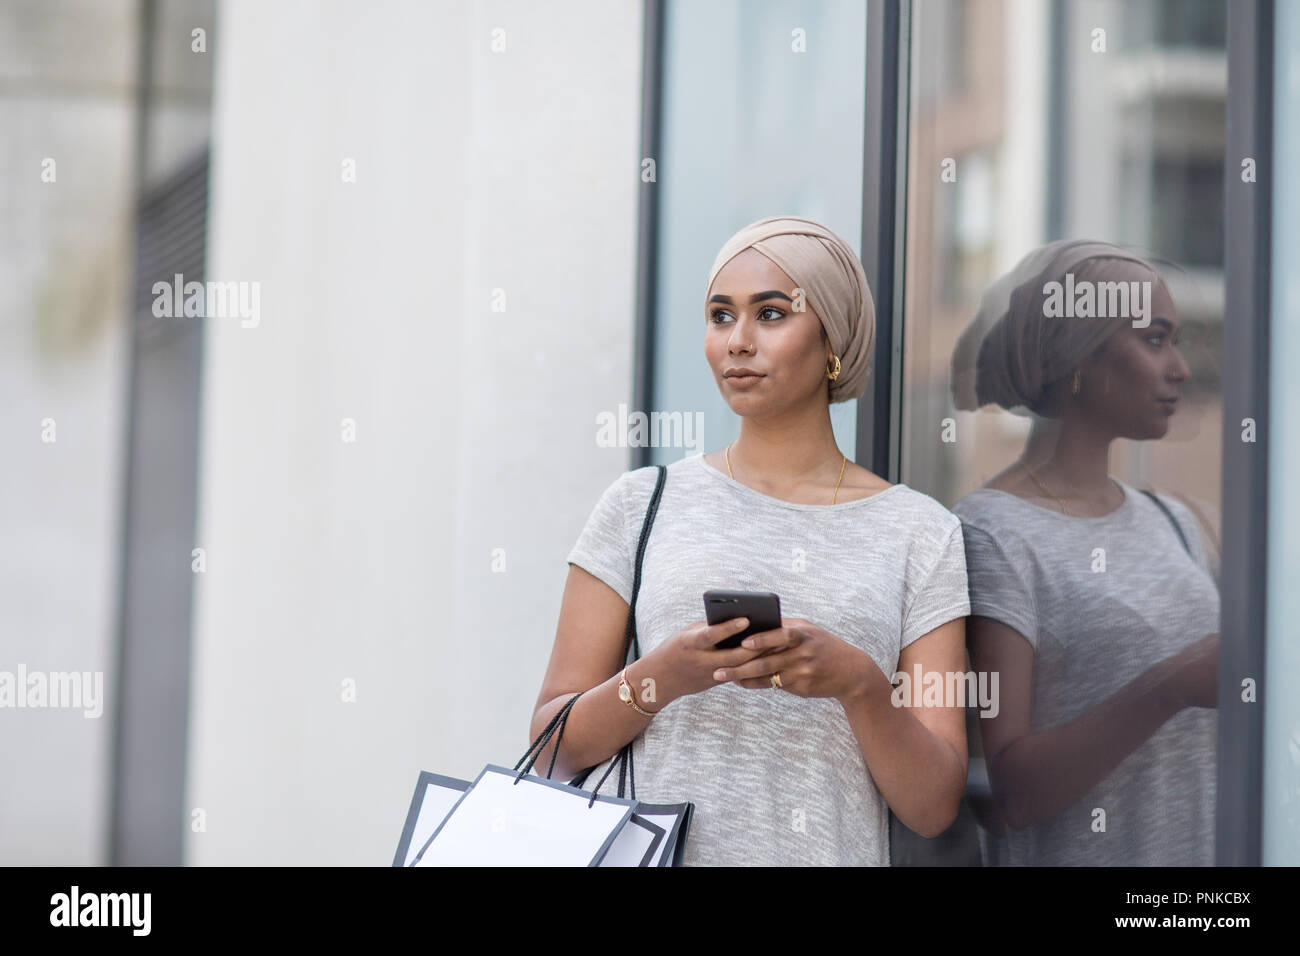 Muslimische Frau mit einem Smartphone auf Shopping-Tour Stockfoto